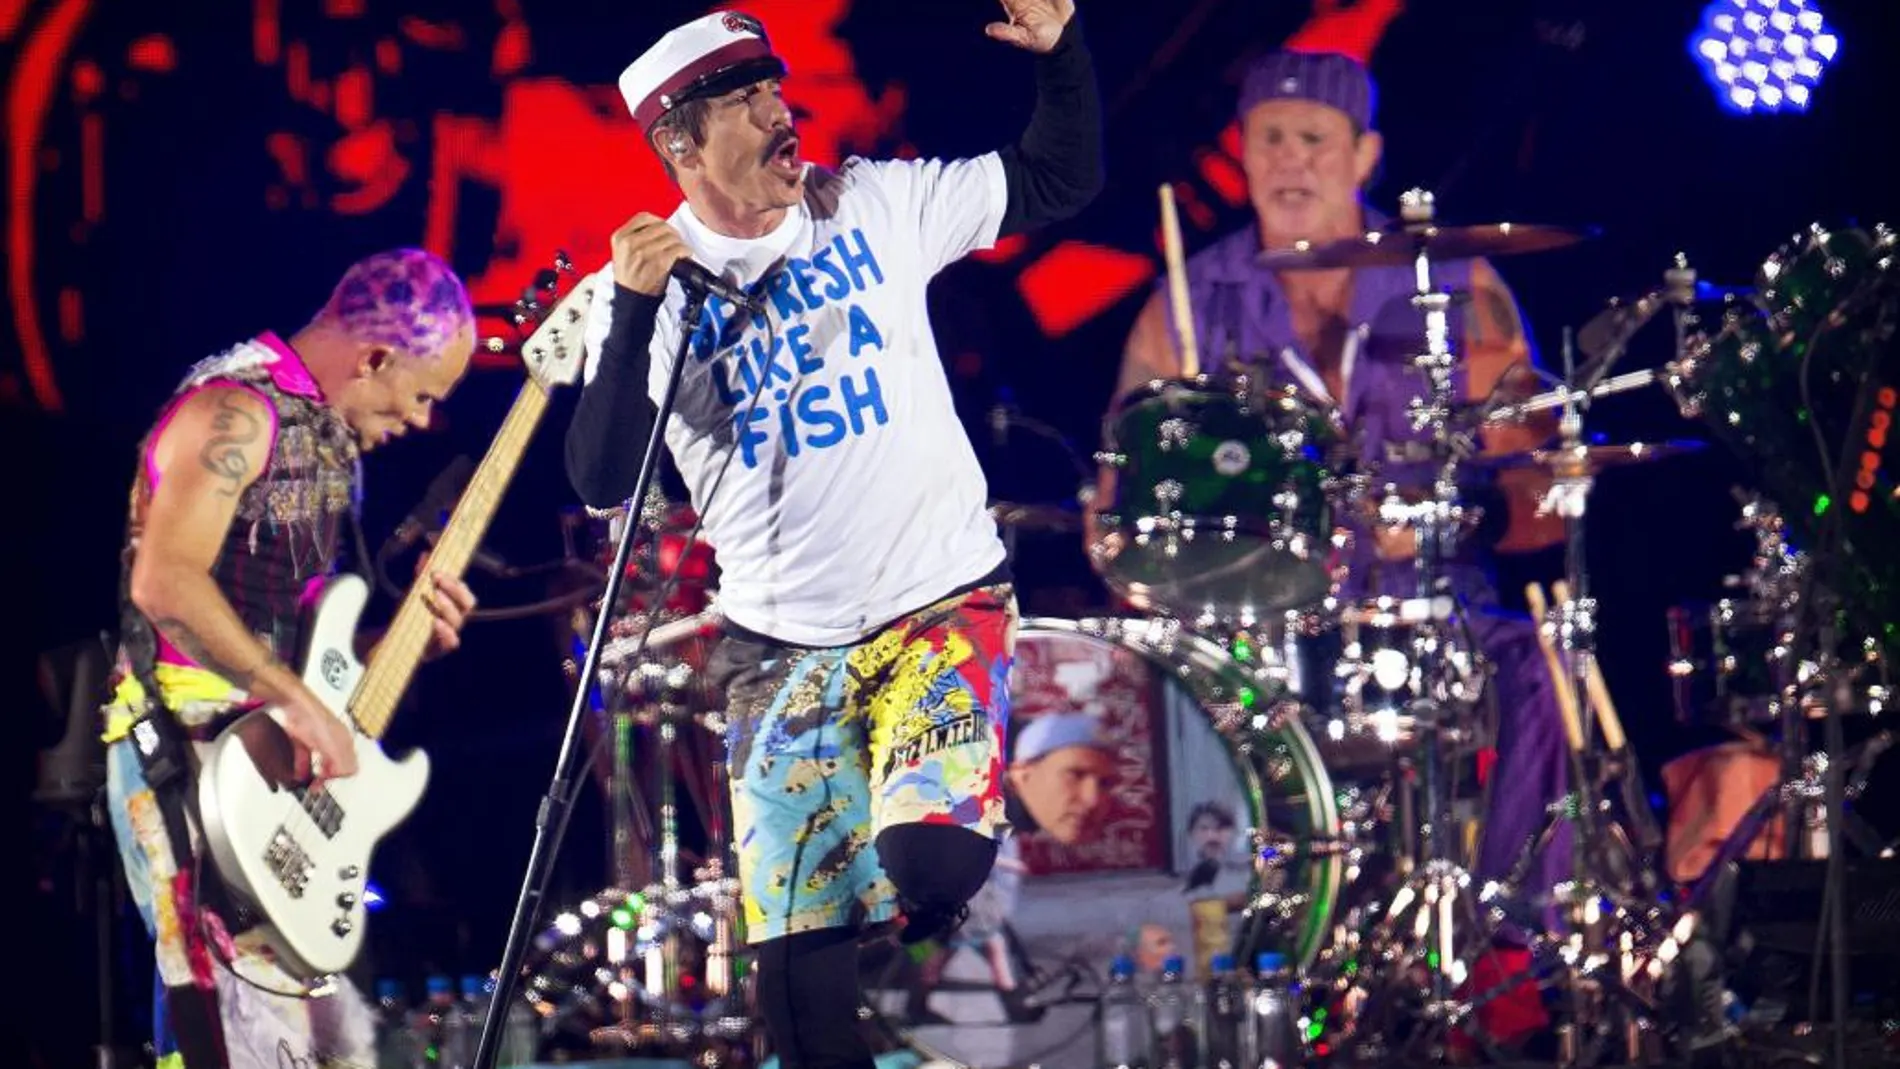 La banda estadounidense Red Hot Chili Peppers se presenta durante el Festival Roskilde celebrado el 29 de junio de 2016